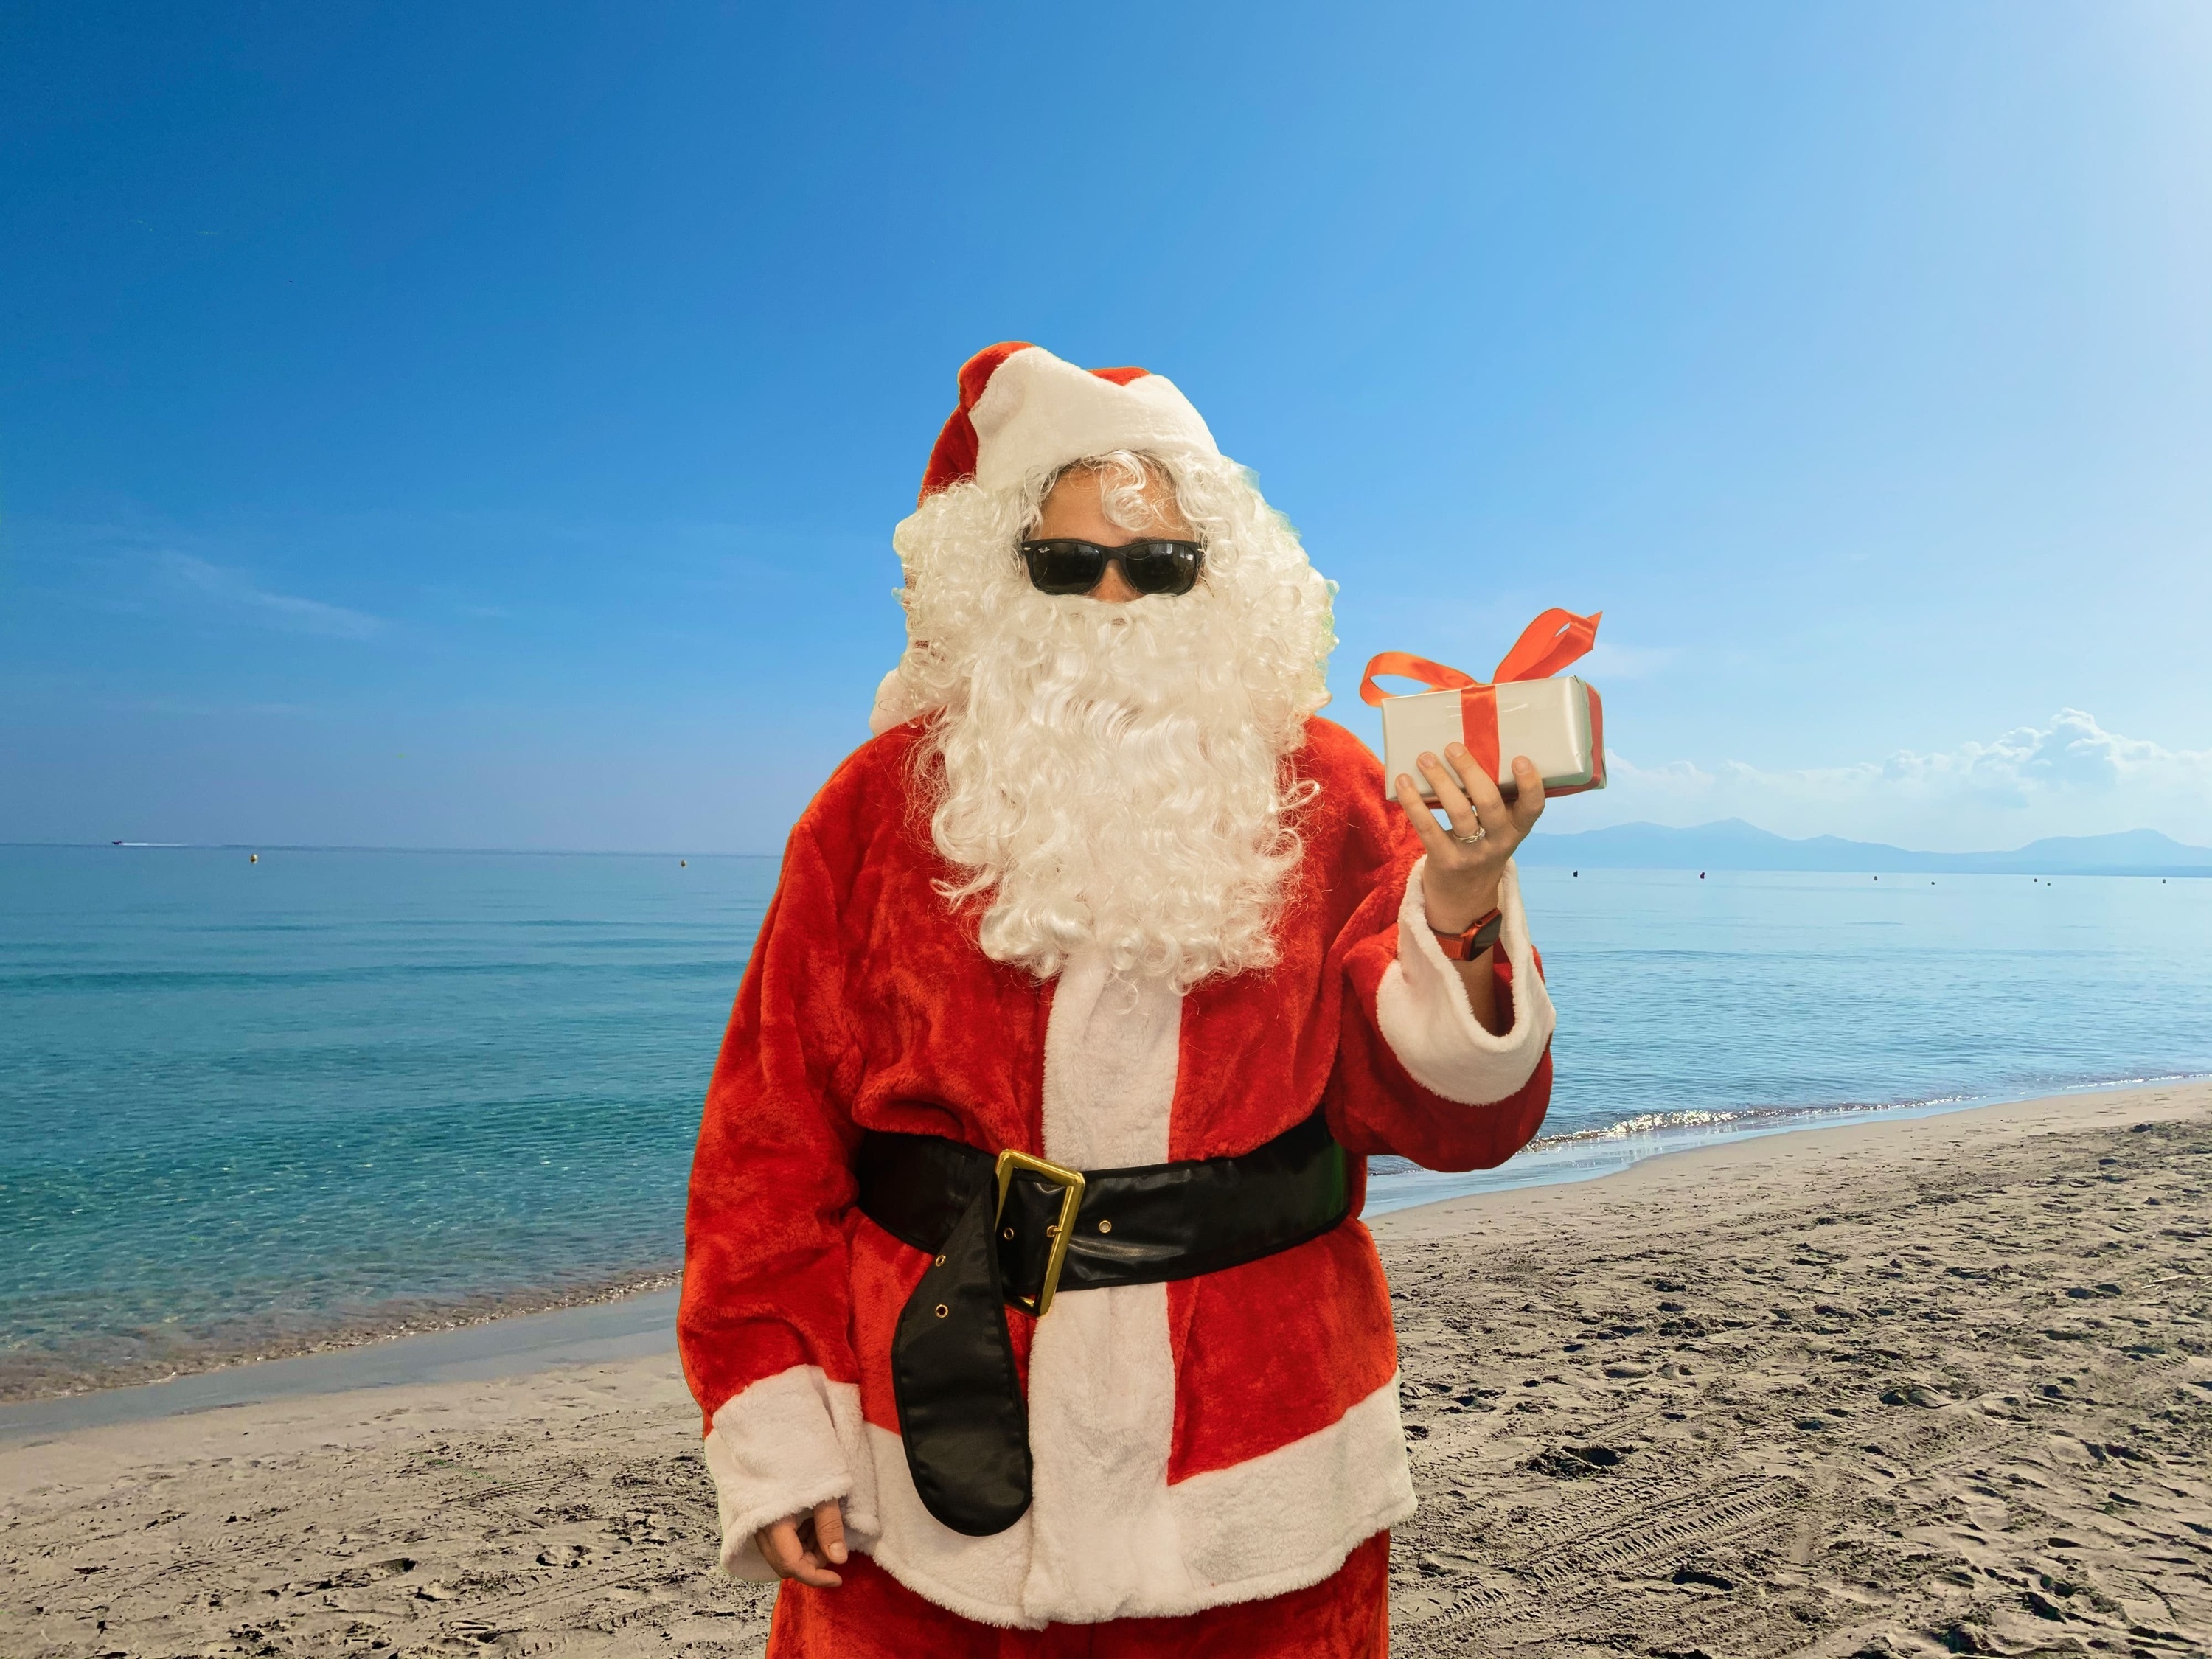 Santa Claus at the beach